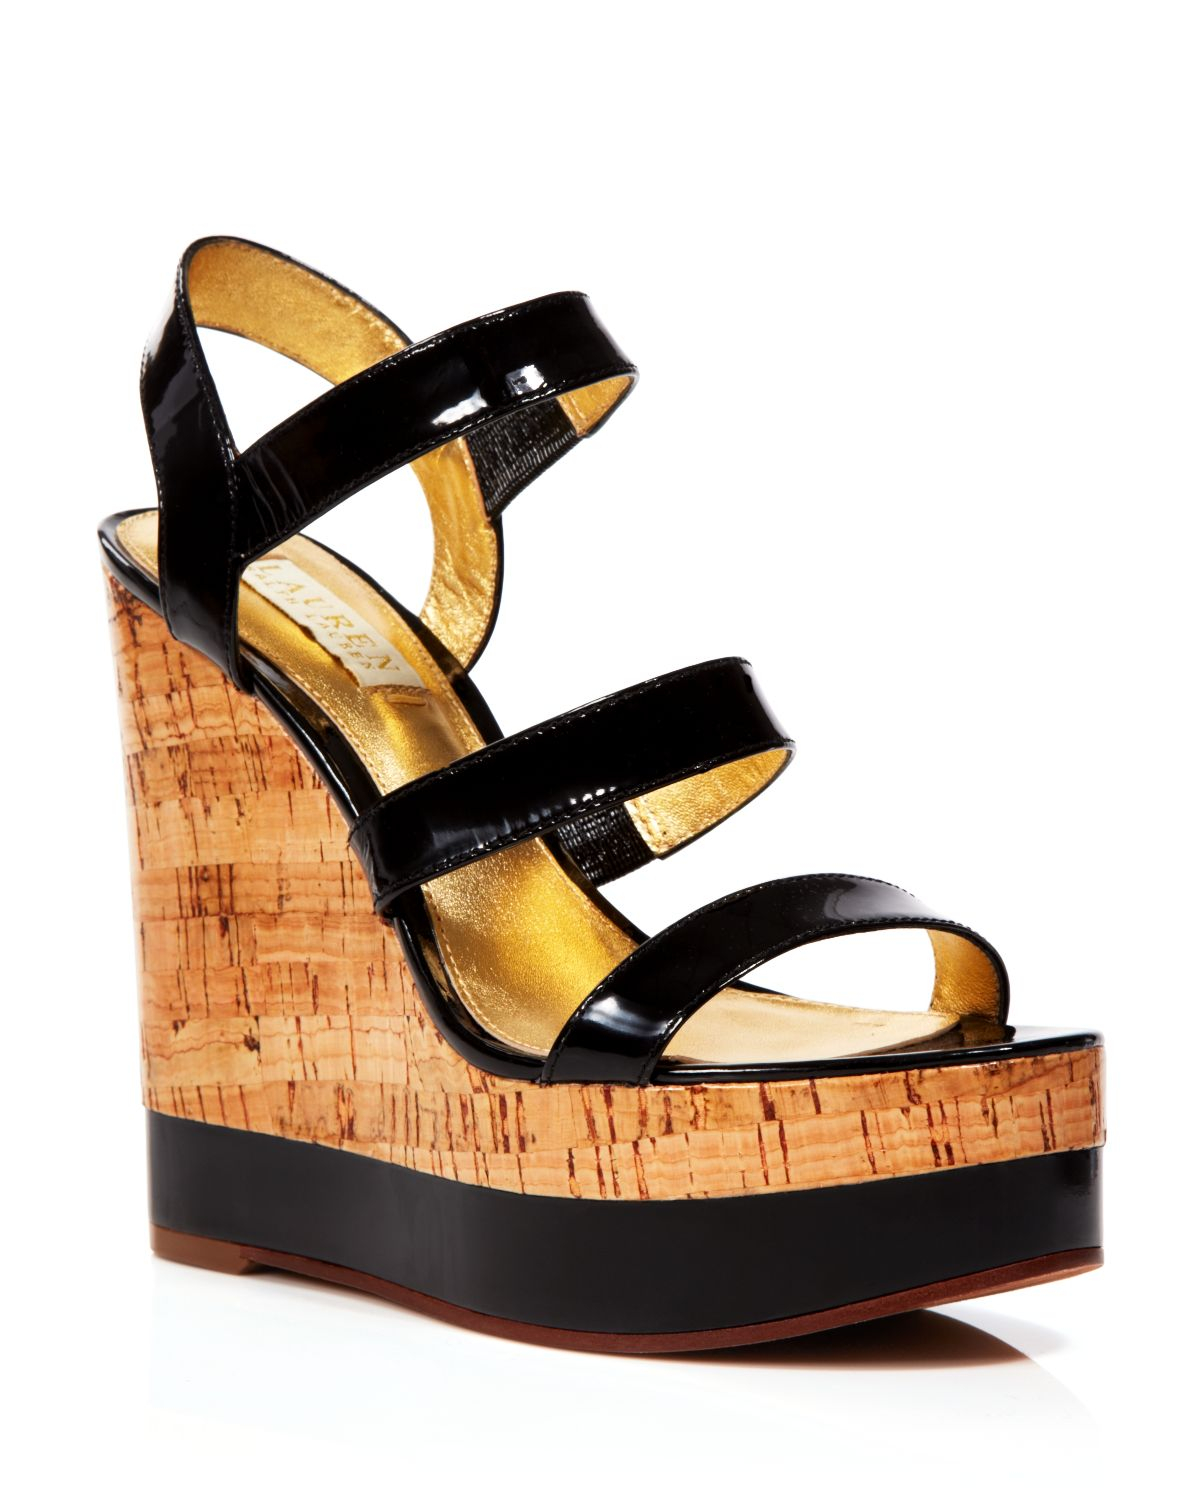 Lyst - Lauren By Ralph Lauren Platform Wedge Sandals - Teressa Patent ...